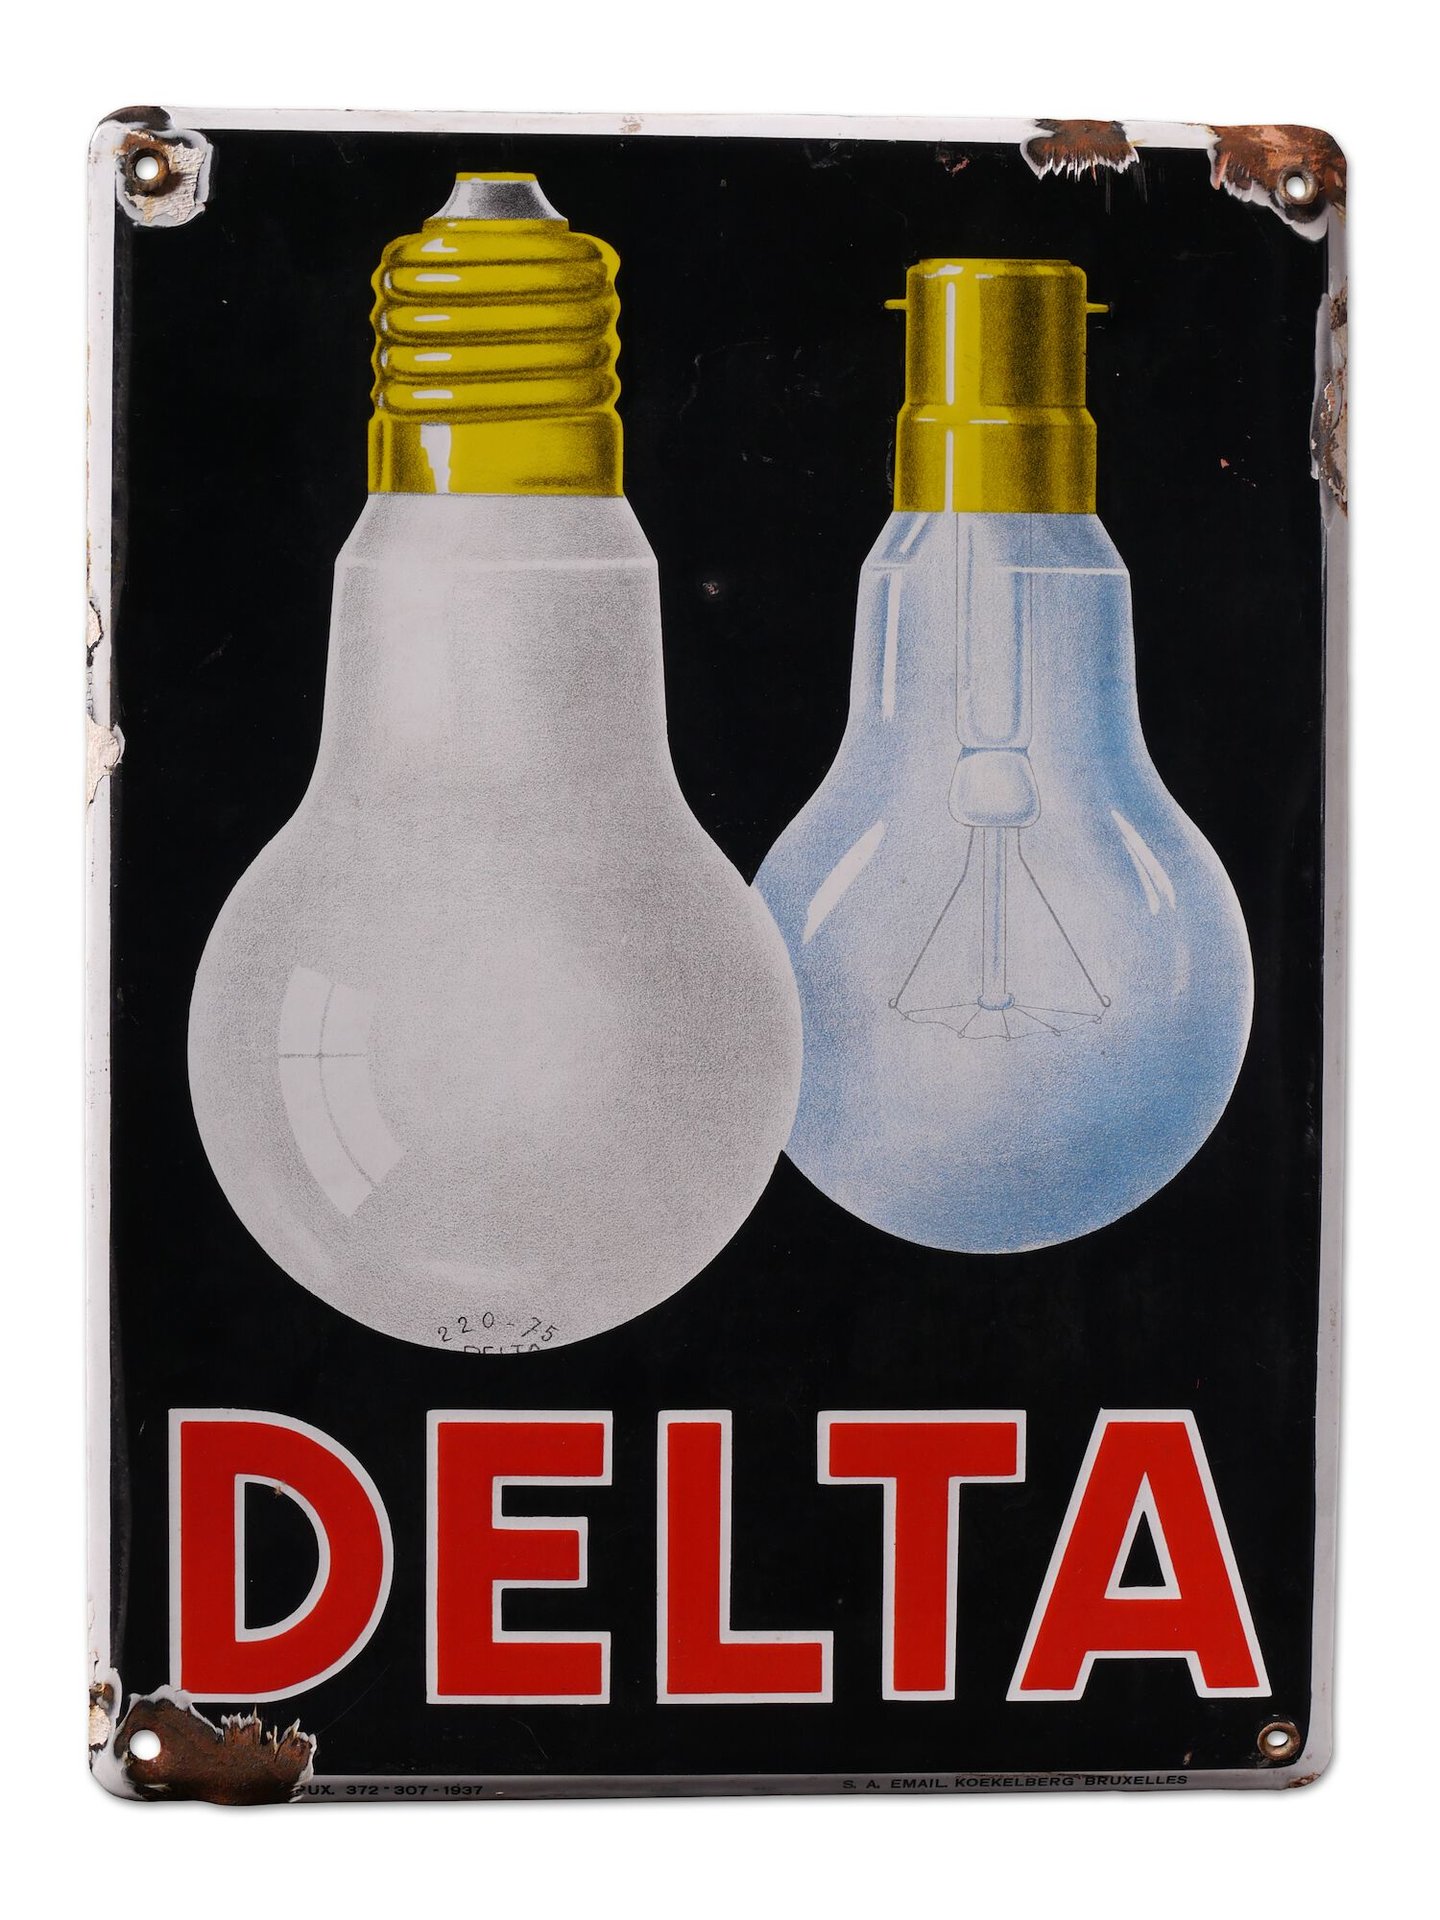 Geëmailleerd reclamebord voor lampen van het merk Delta